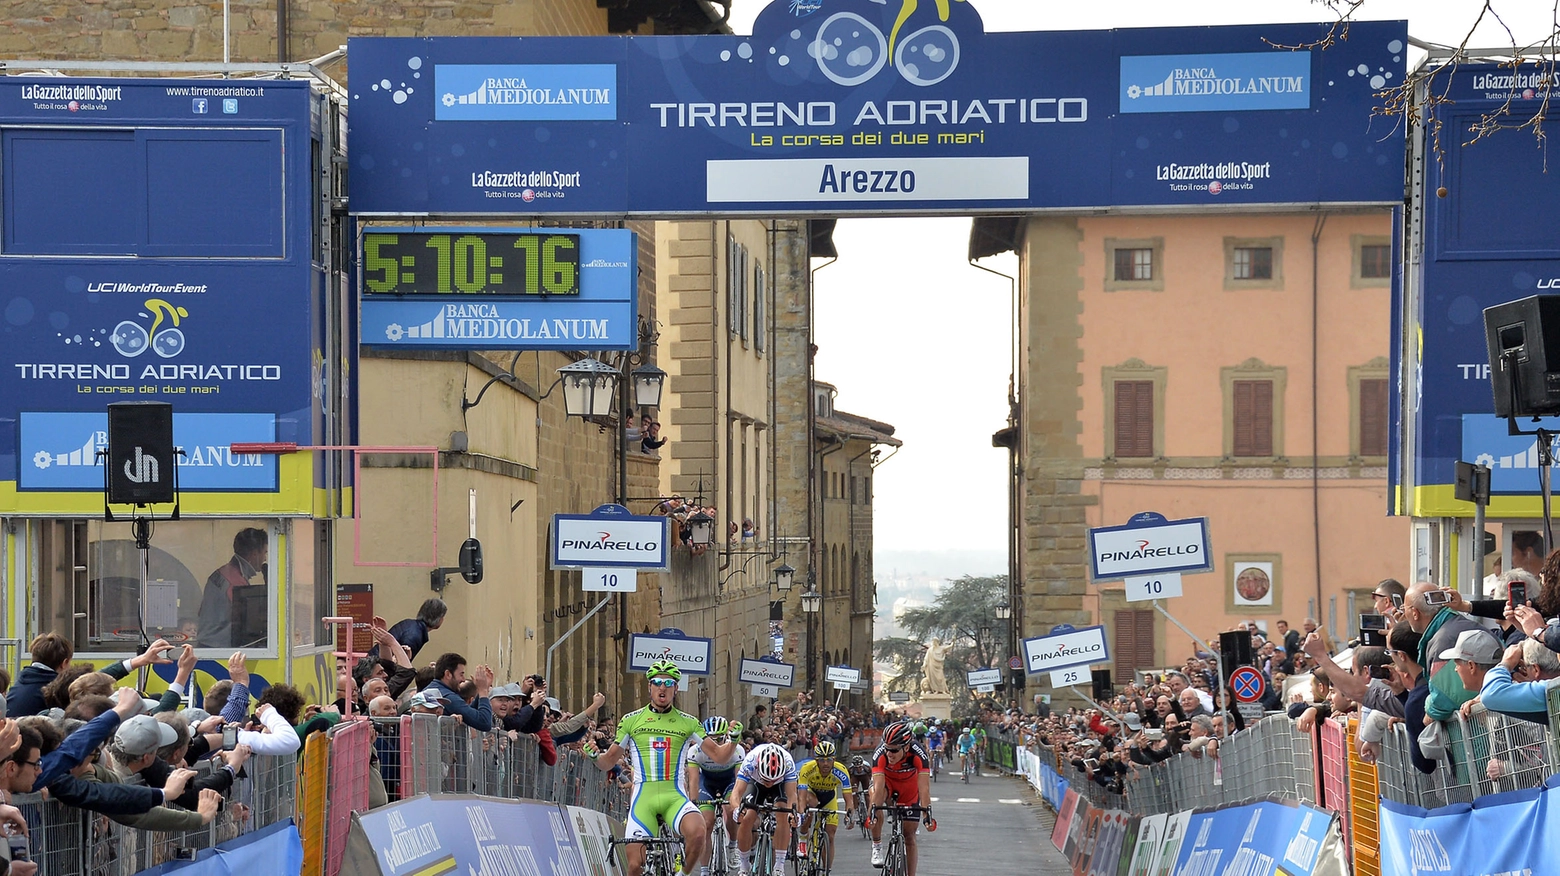 L'arrivo ad Arezzo della scorsa Tirreno-Adriatico col successo di Sagan